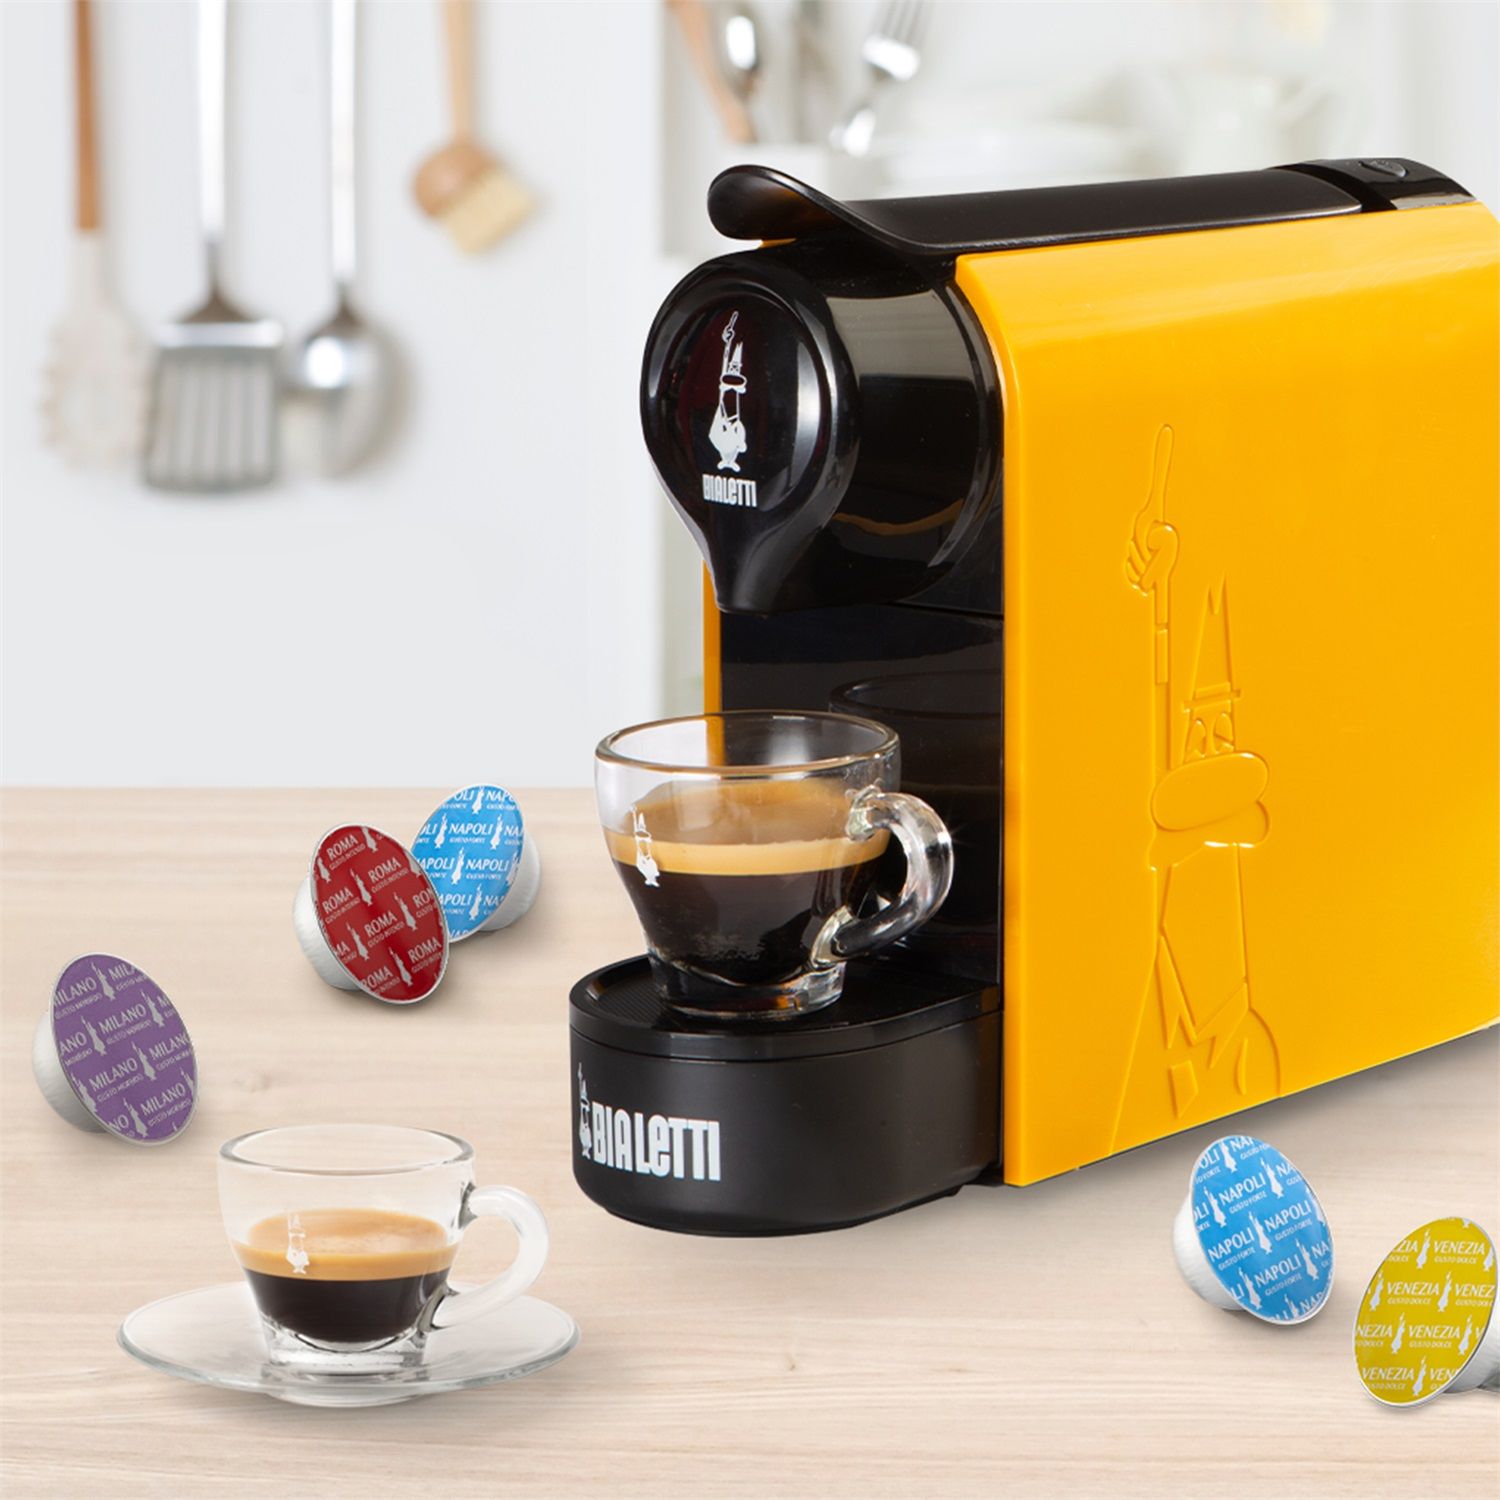 Coffee Break al massimo della qualità con la Macchina per Caffè Nespresso  IN OFFERTA su